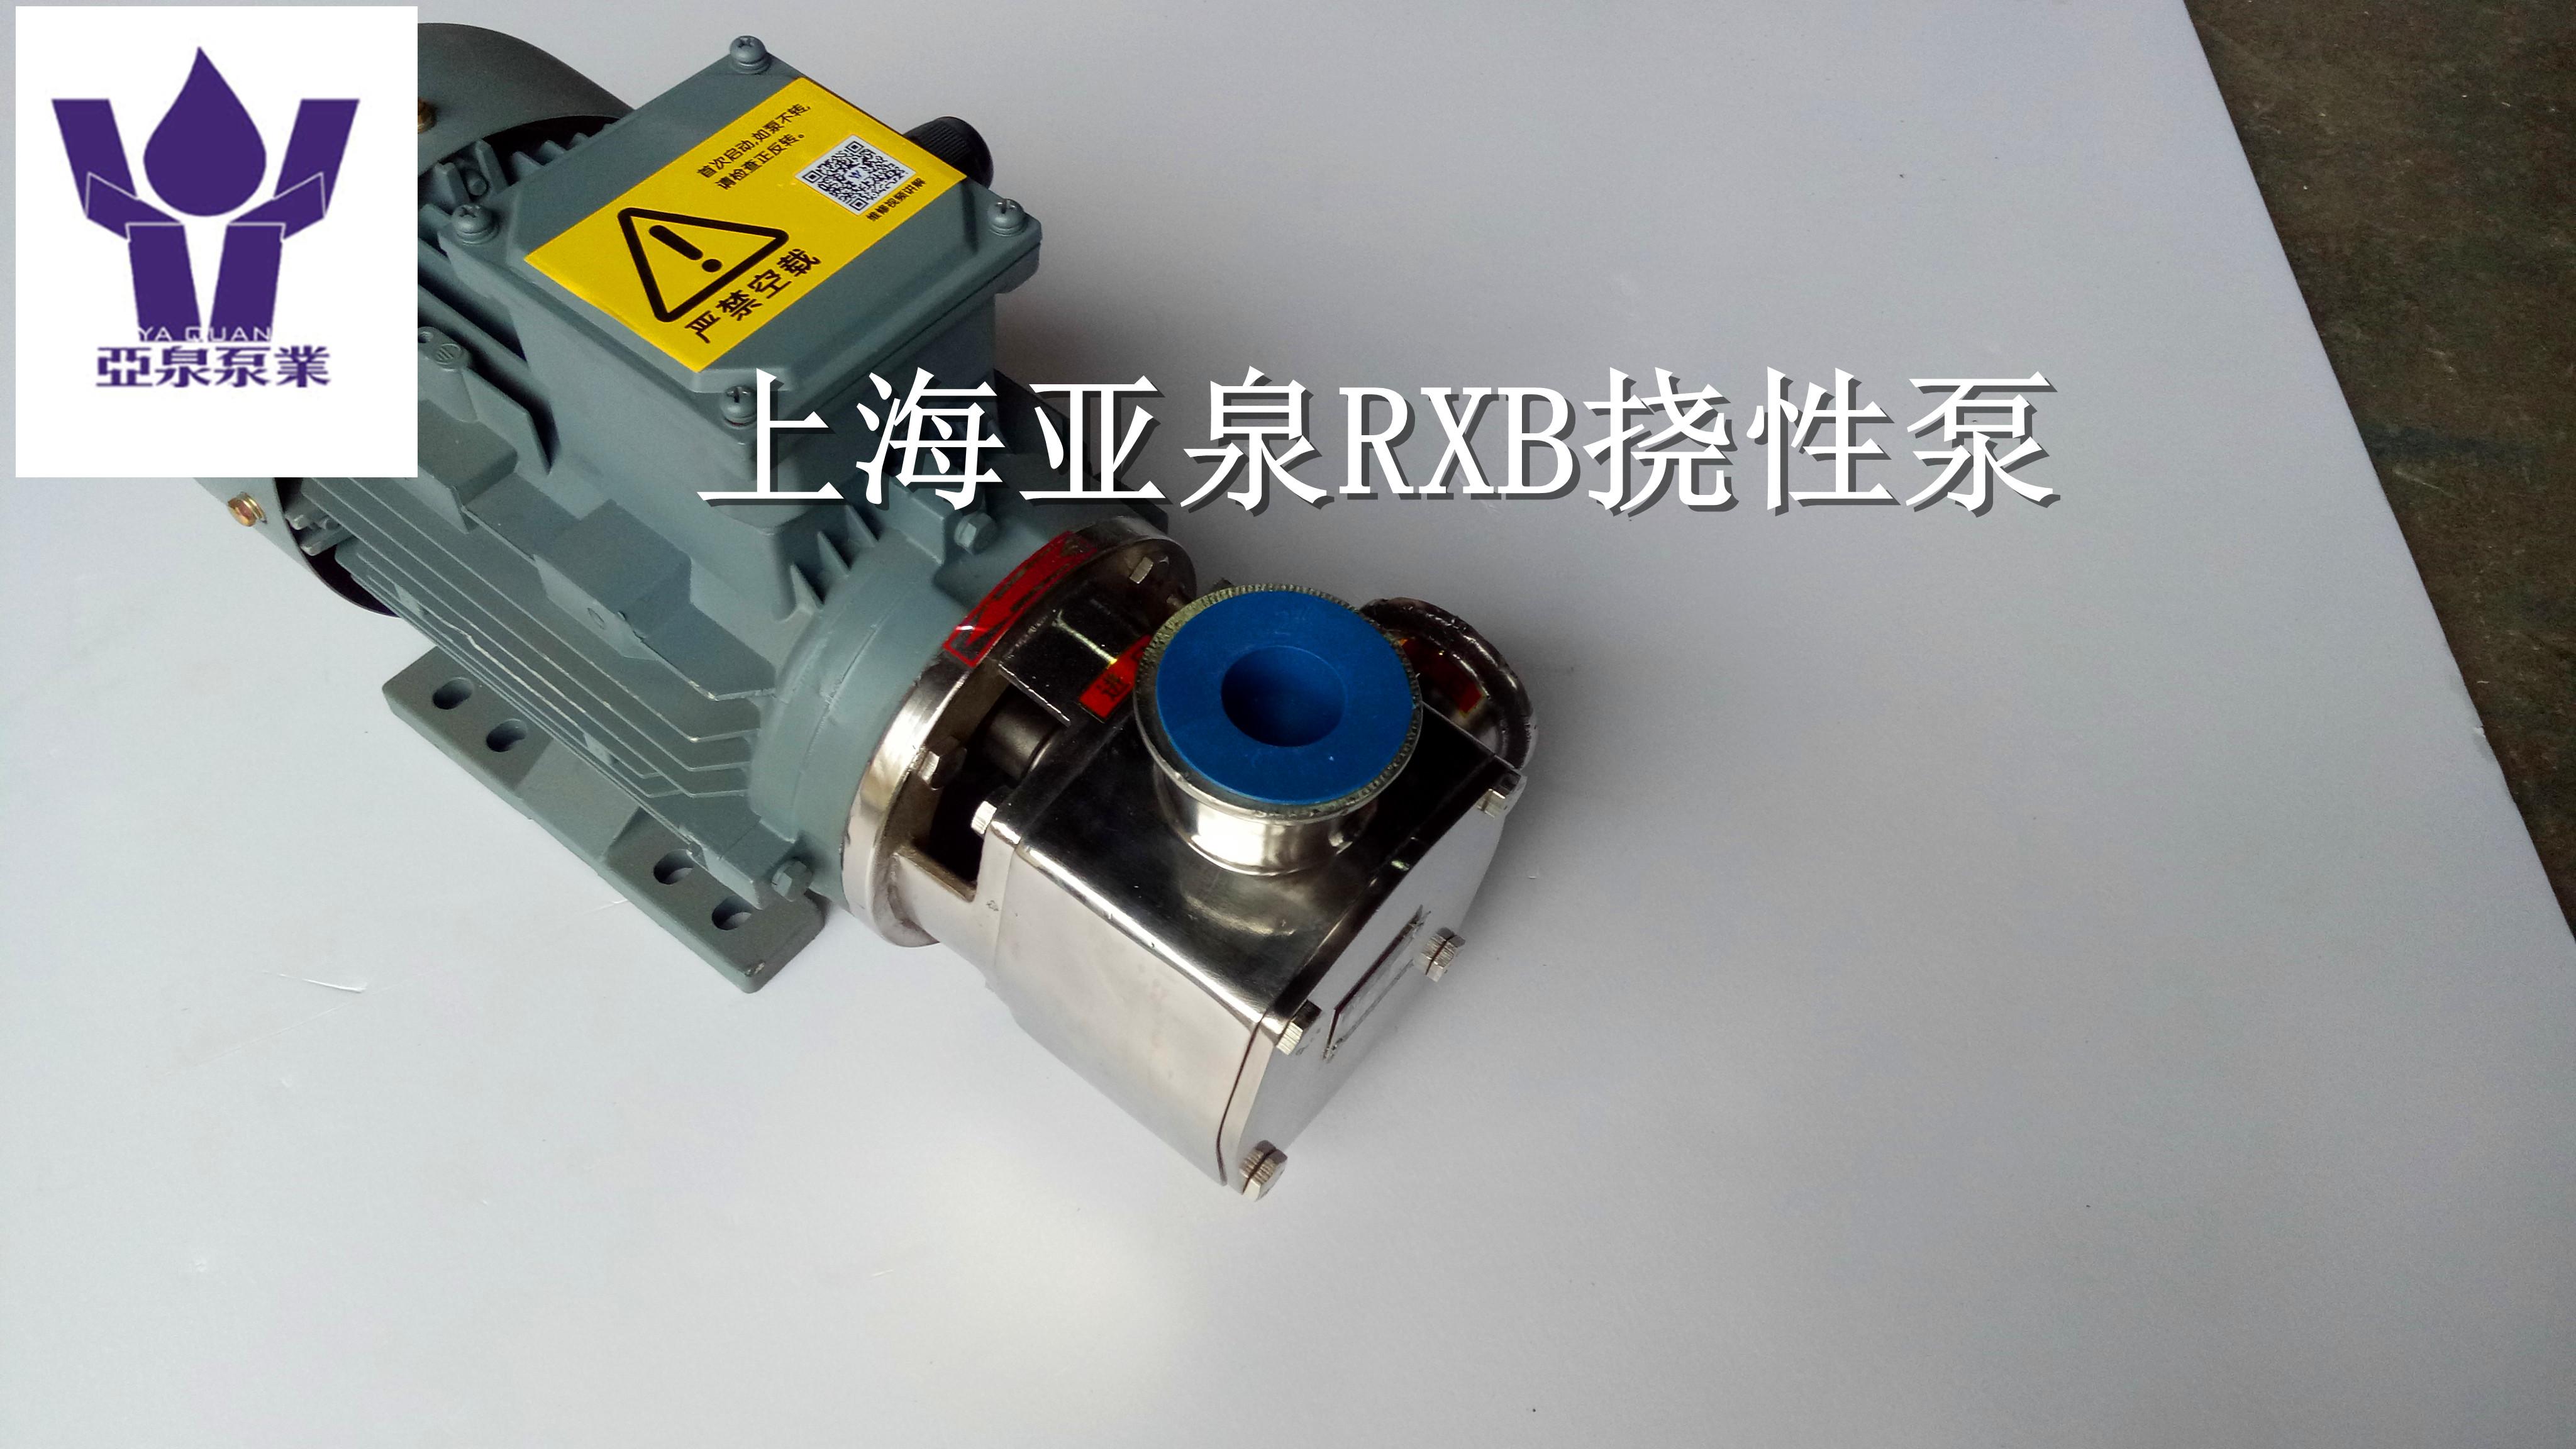 上海亚泉泵业25-RXB挠性泵 不锈钢自吸挠性泵 柔性转子泵